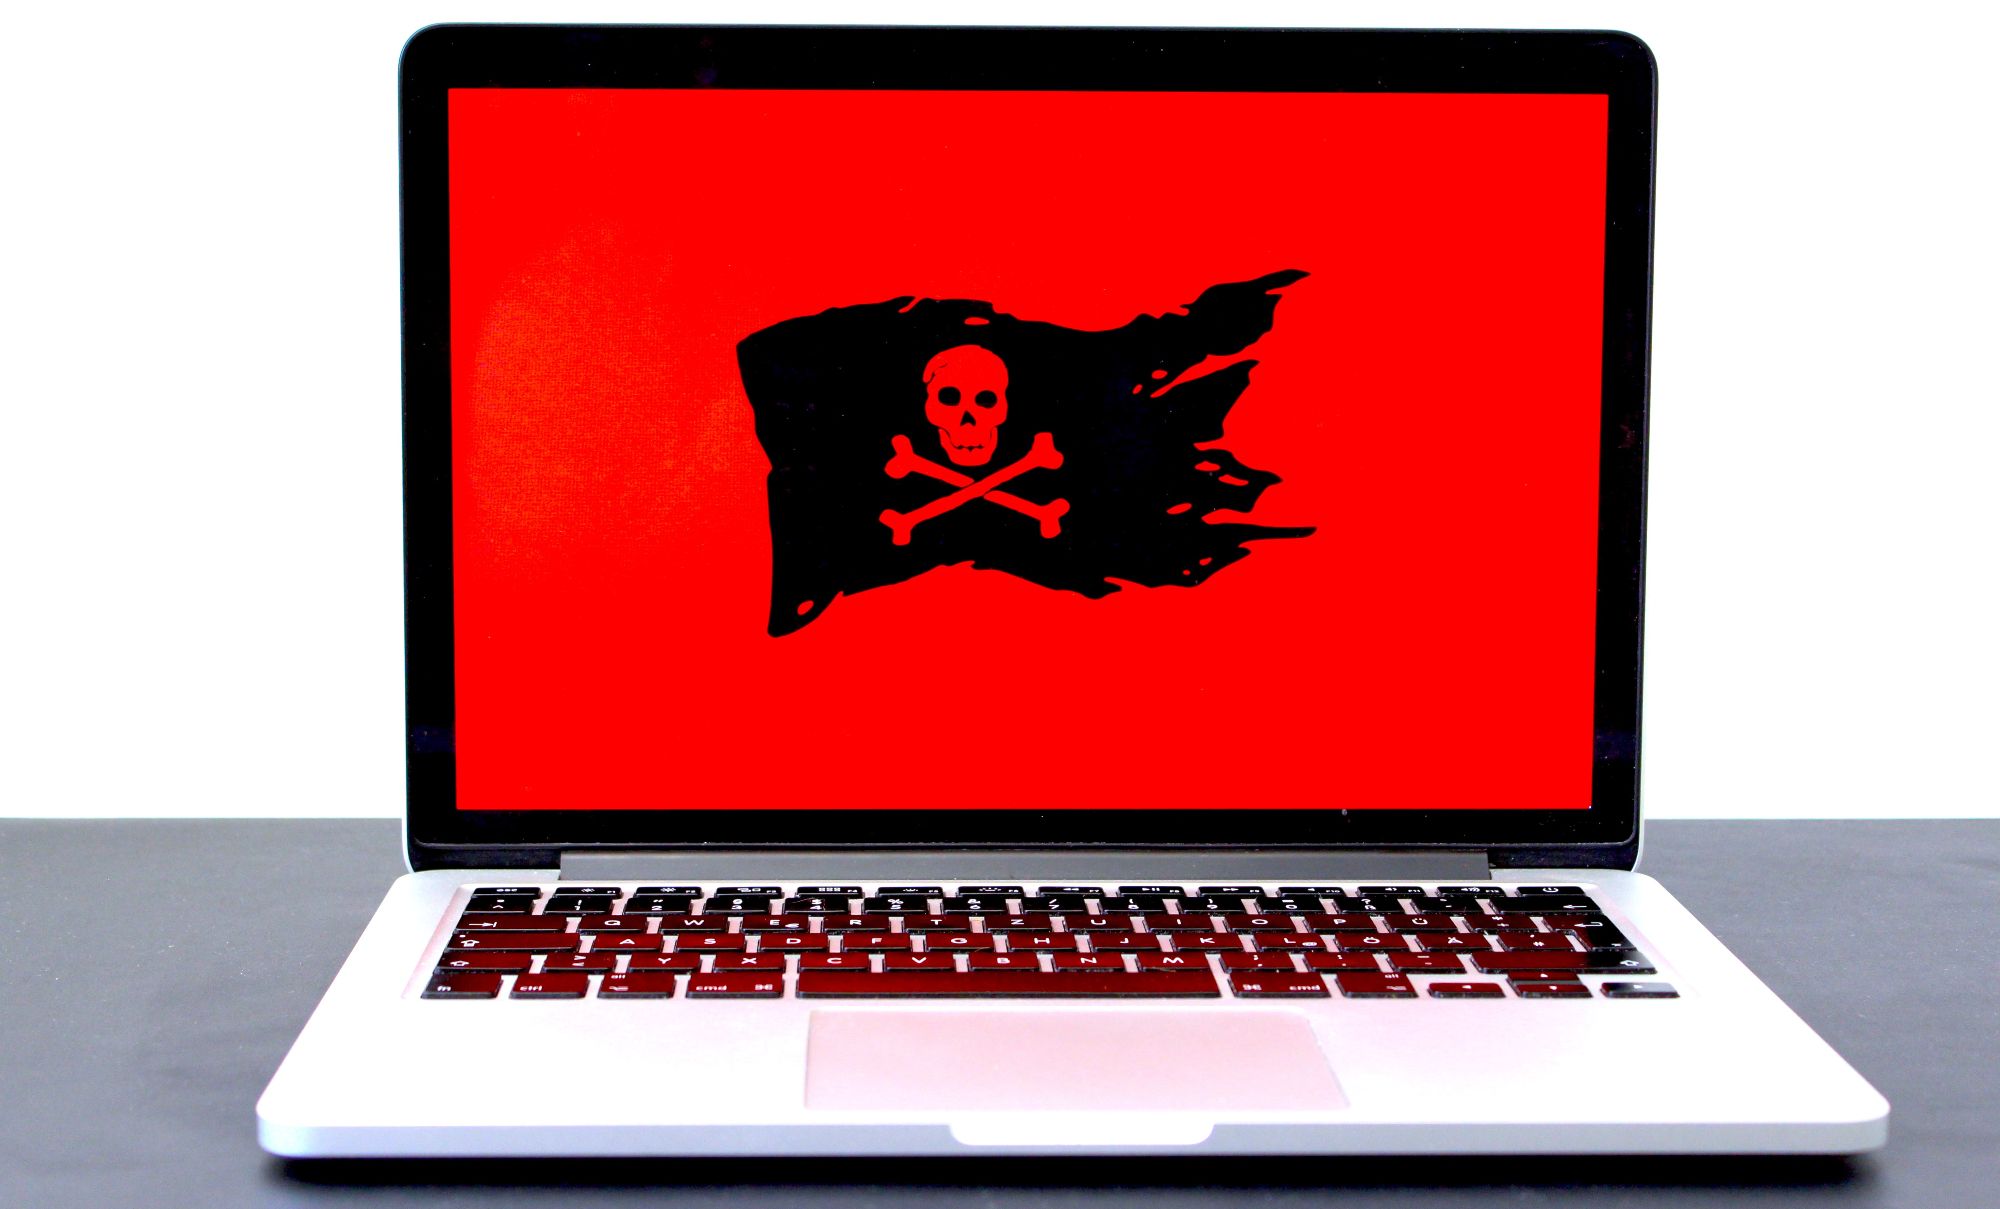 black skull and bones flag on laptop screen